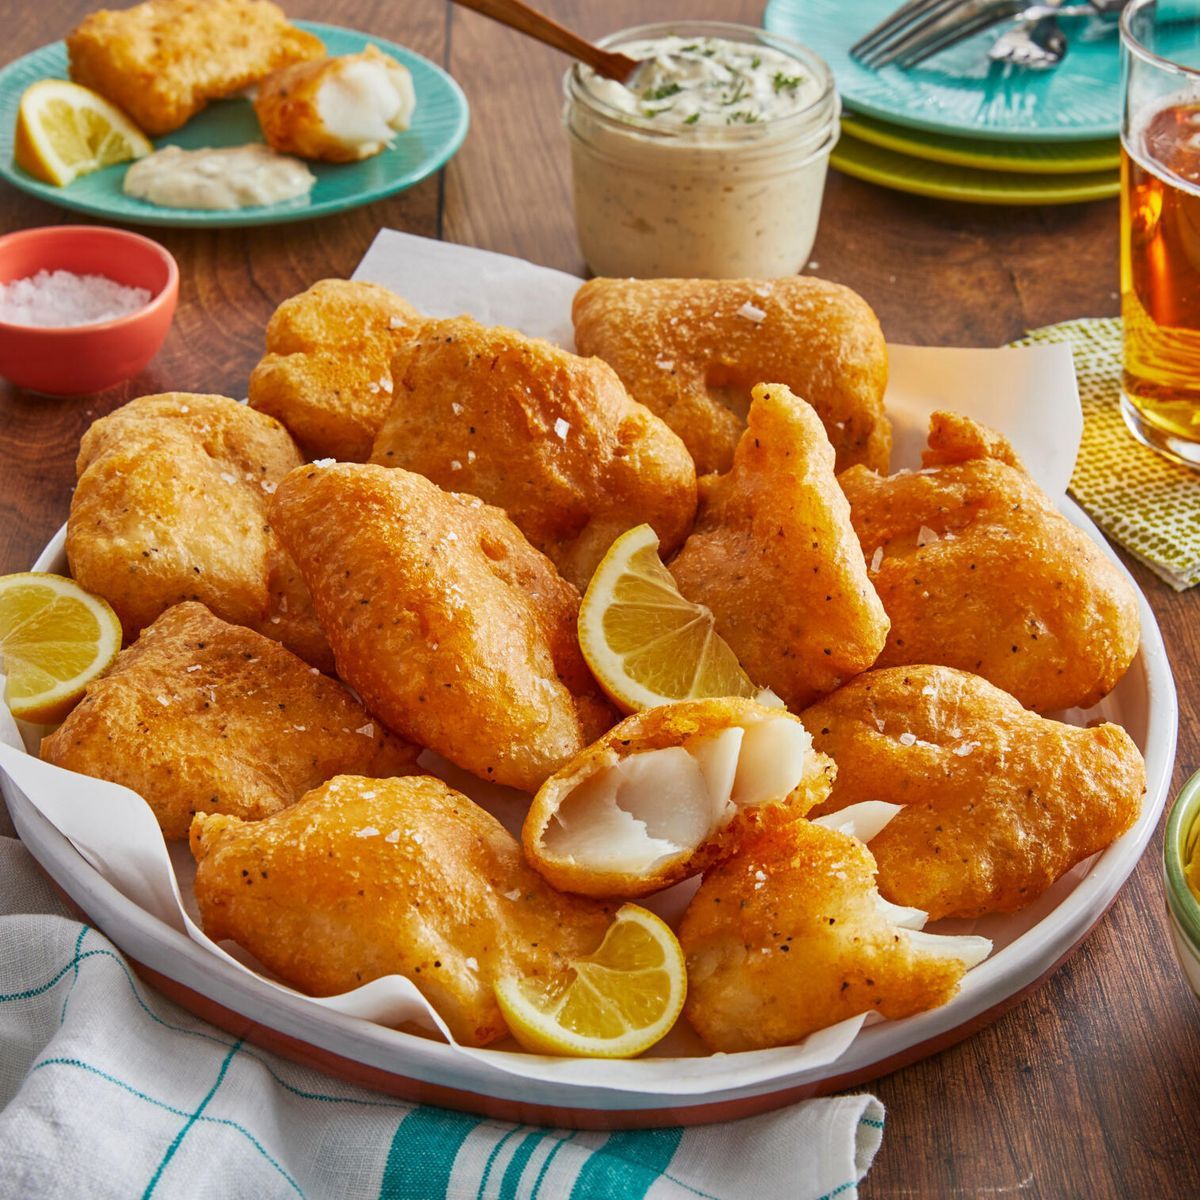 15 Best Fish Fry Recipes - Easy Fish Fry Menu Ideas